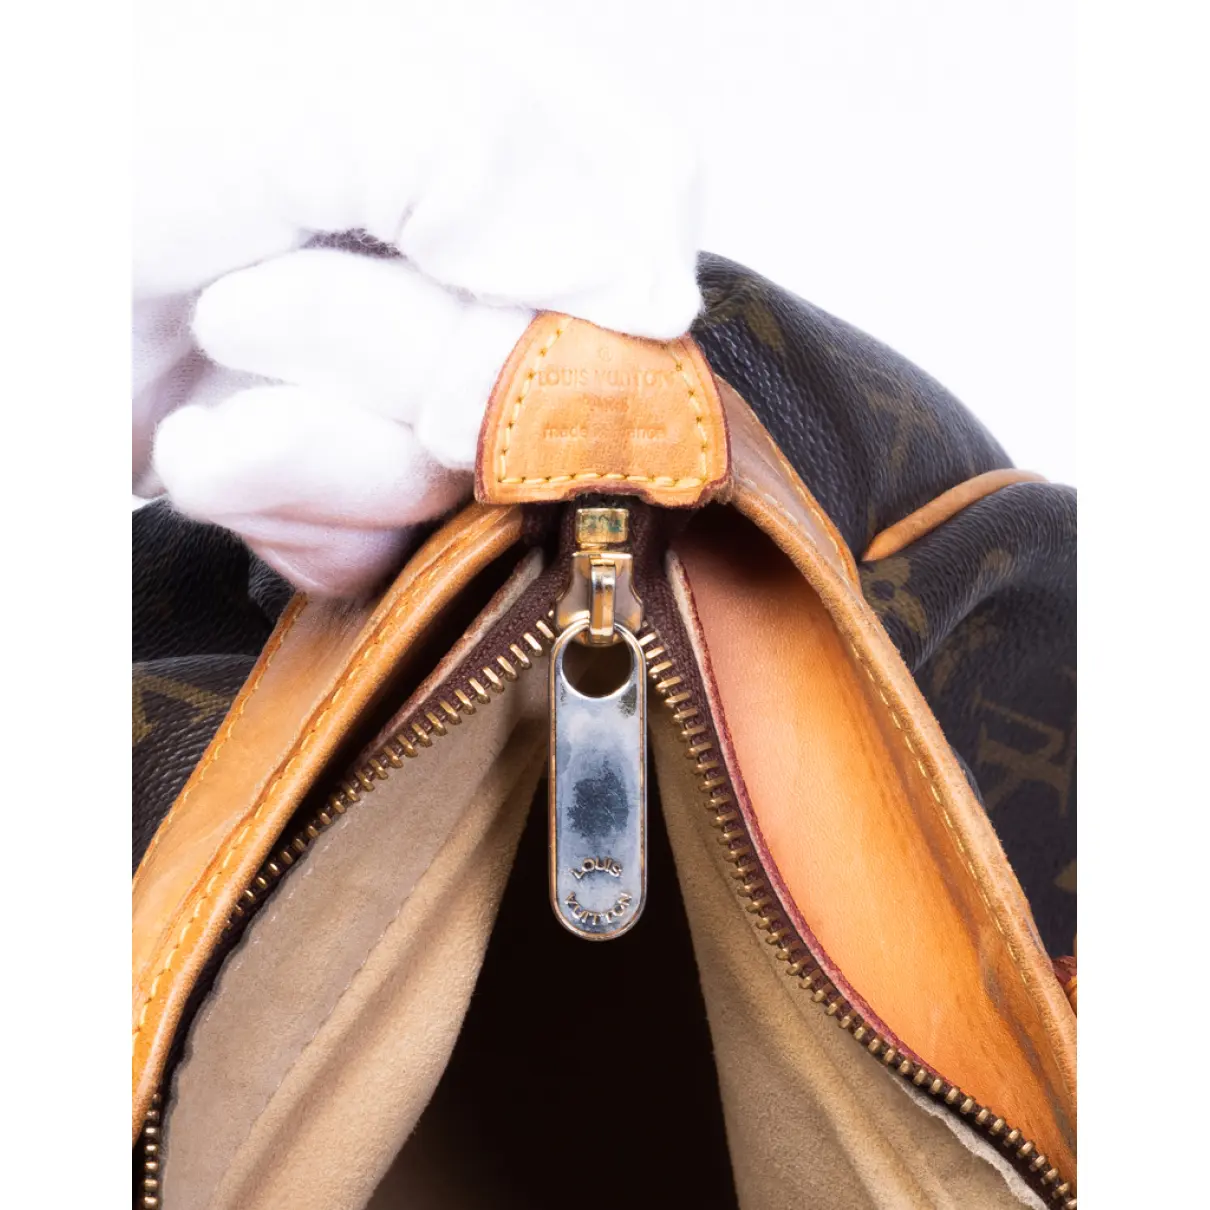 Boetie cloth handbag Louis Vuitton